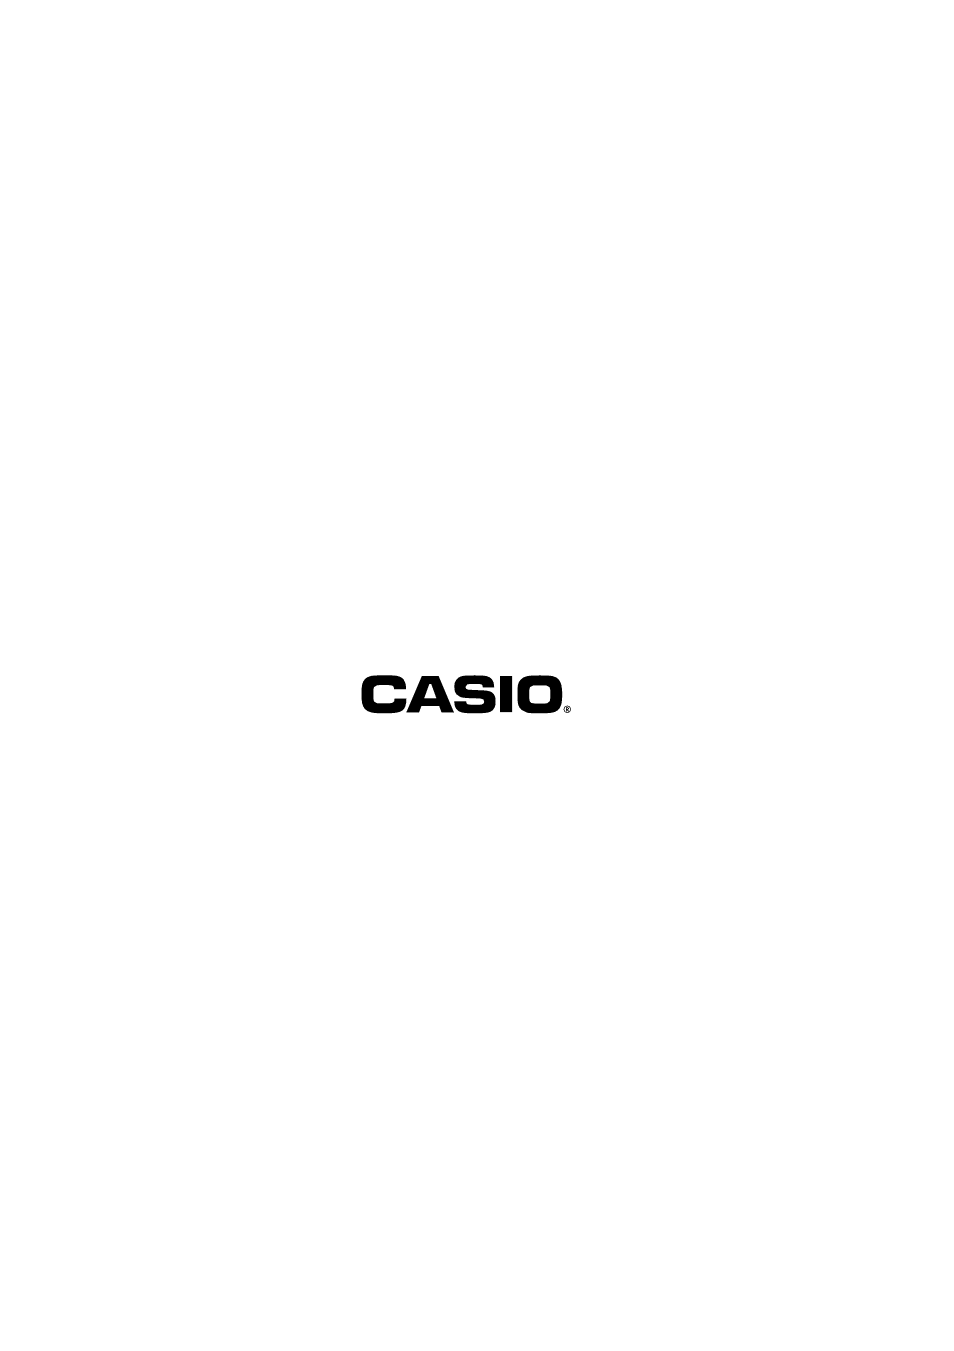 Casio TK-T500 Manuel d'utilisation | Page 124 / 124